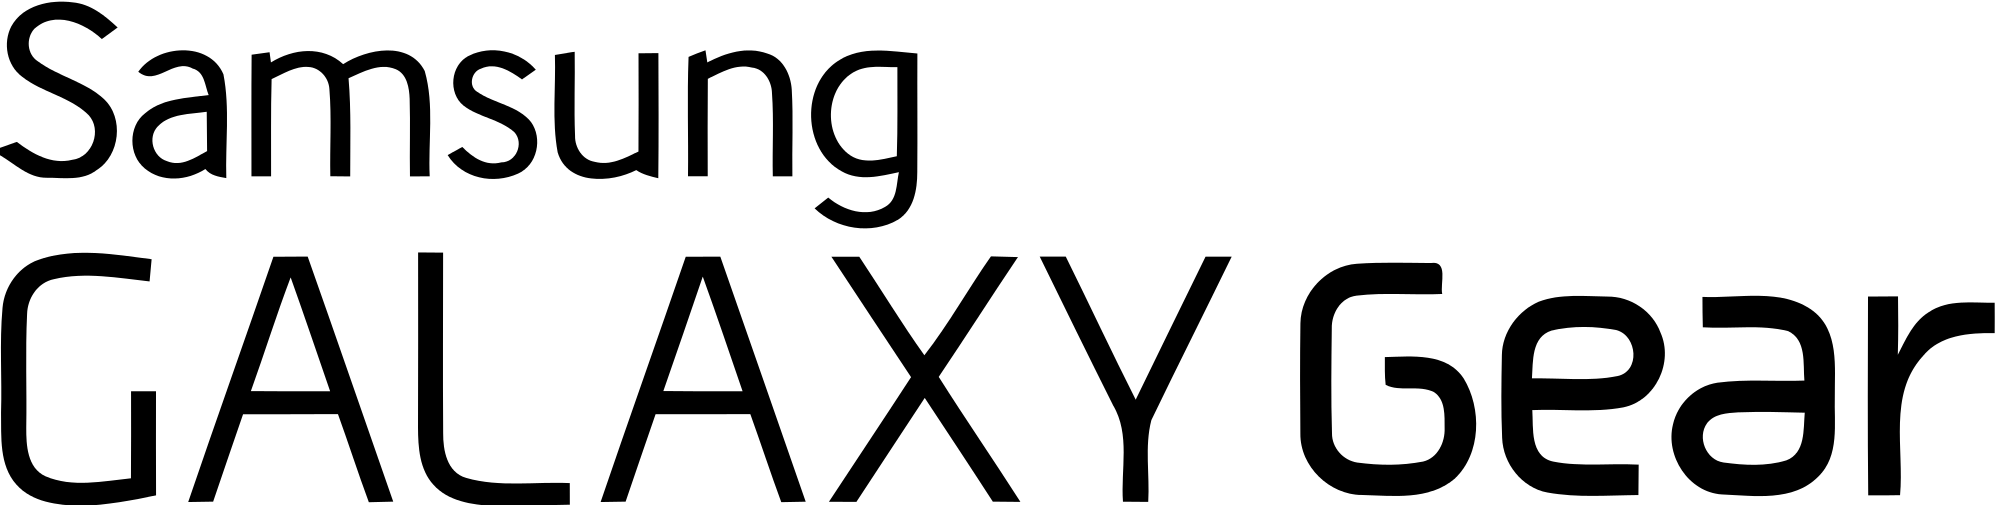 Samsung Watch Logo - Samsung Galaxy Gear Logo.svg